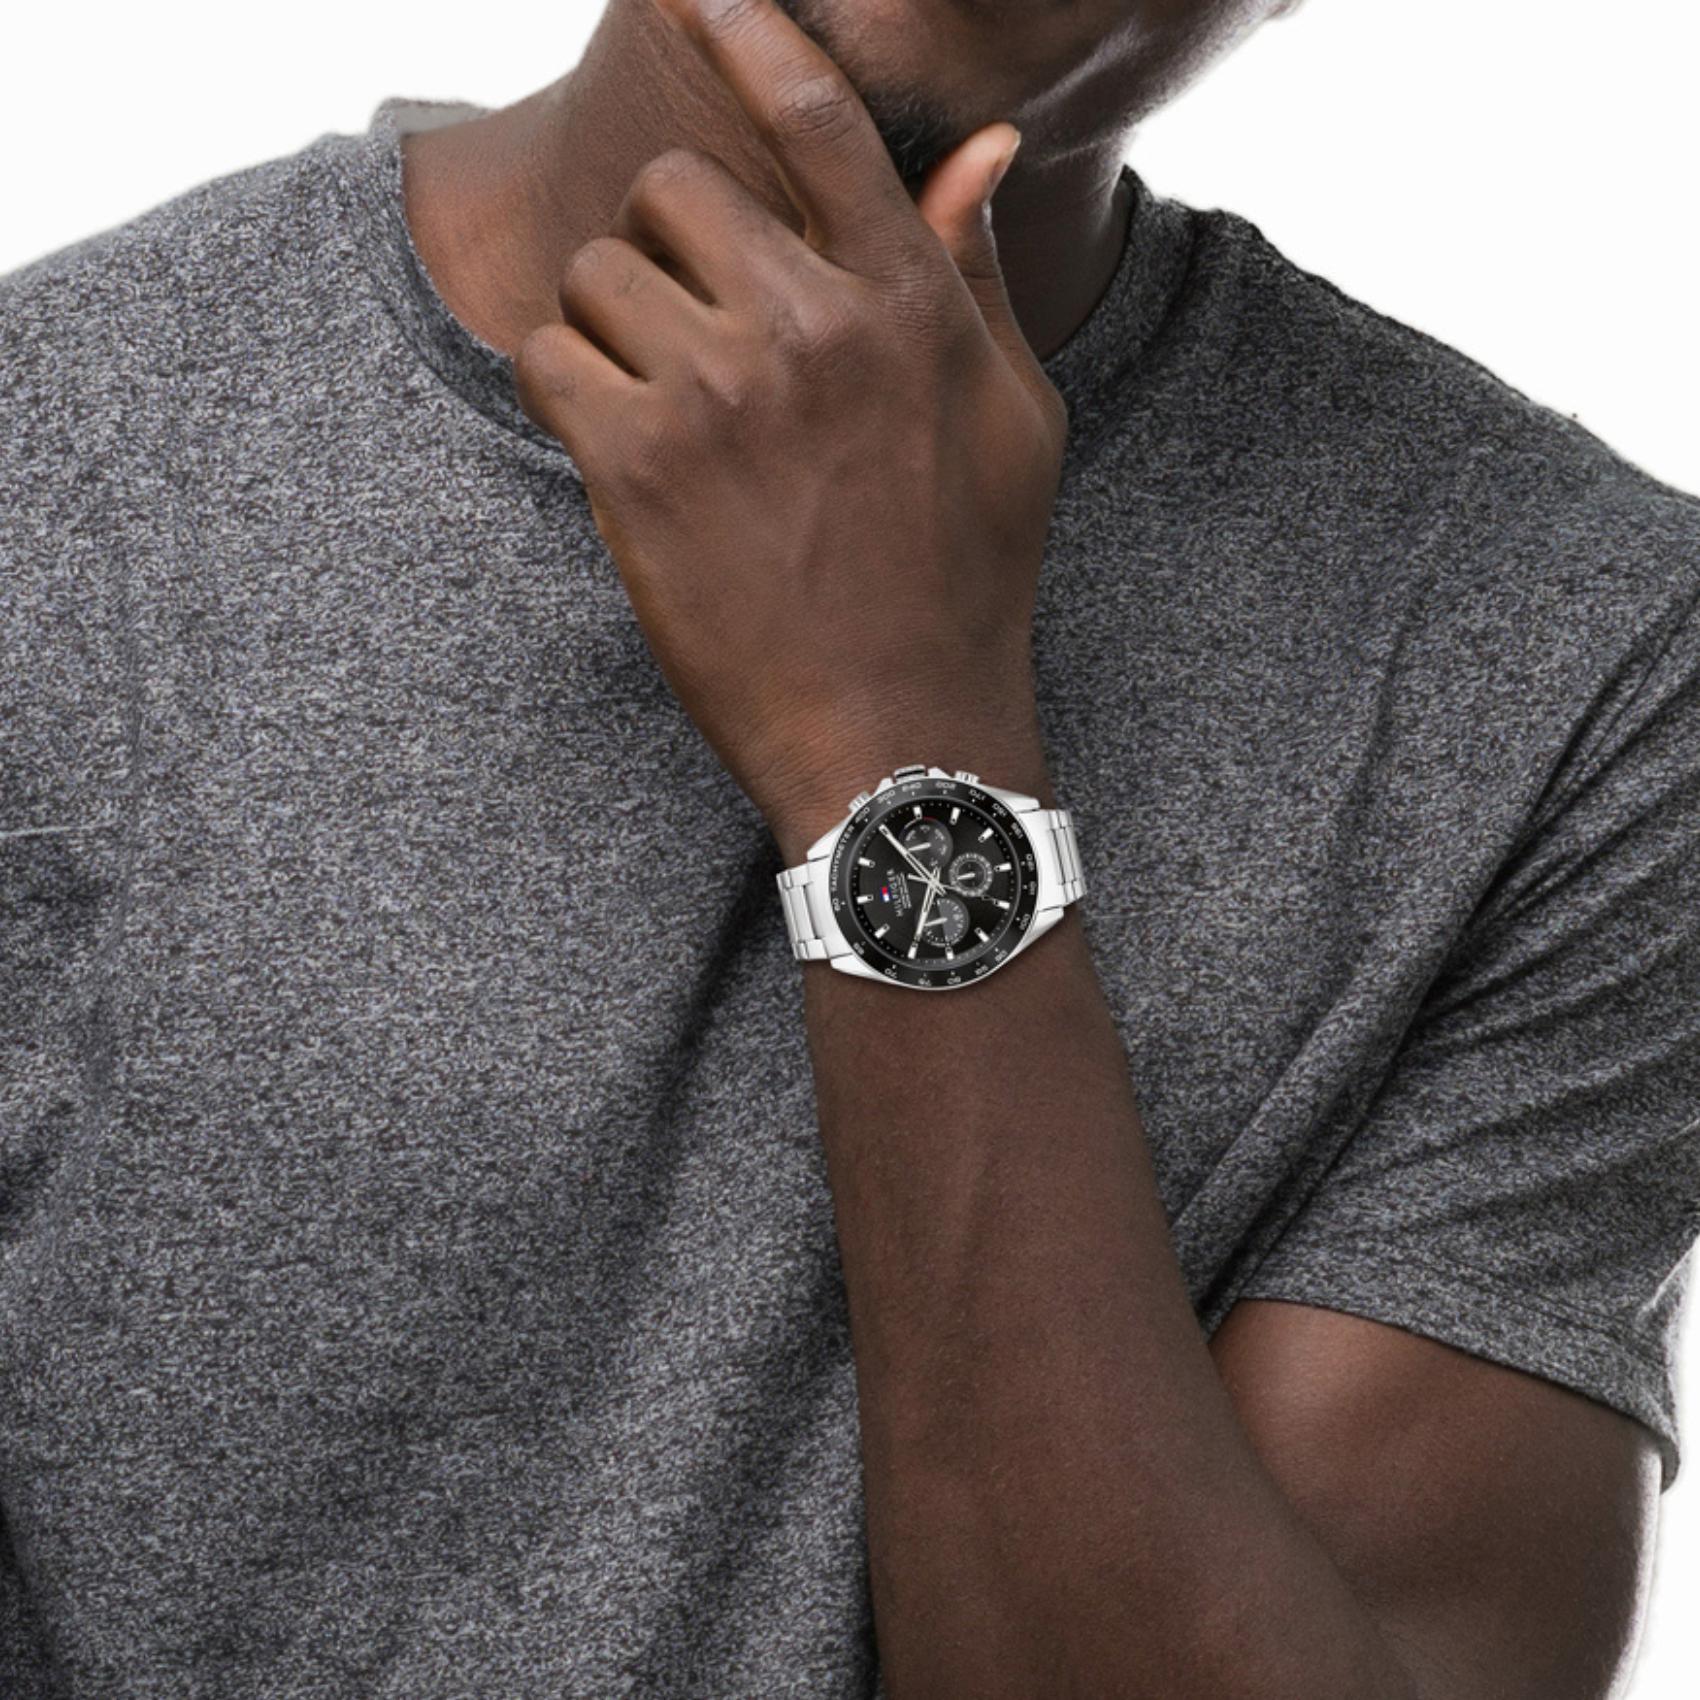 Αντρικό ρολόι Tommy Hilfiger Owen 1791967 με ασημί ατσάλινο μπρασελέ και μαύρο καντράν διαμέτρου 46mm.